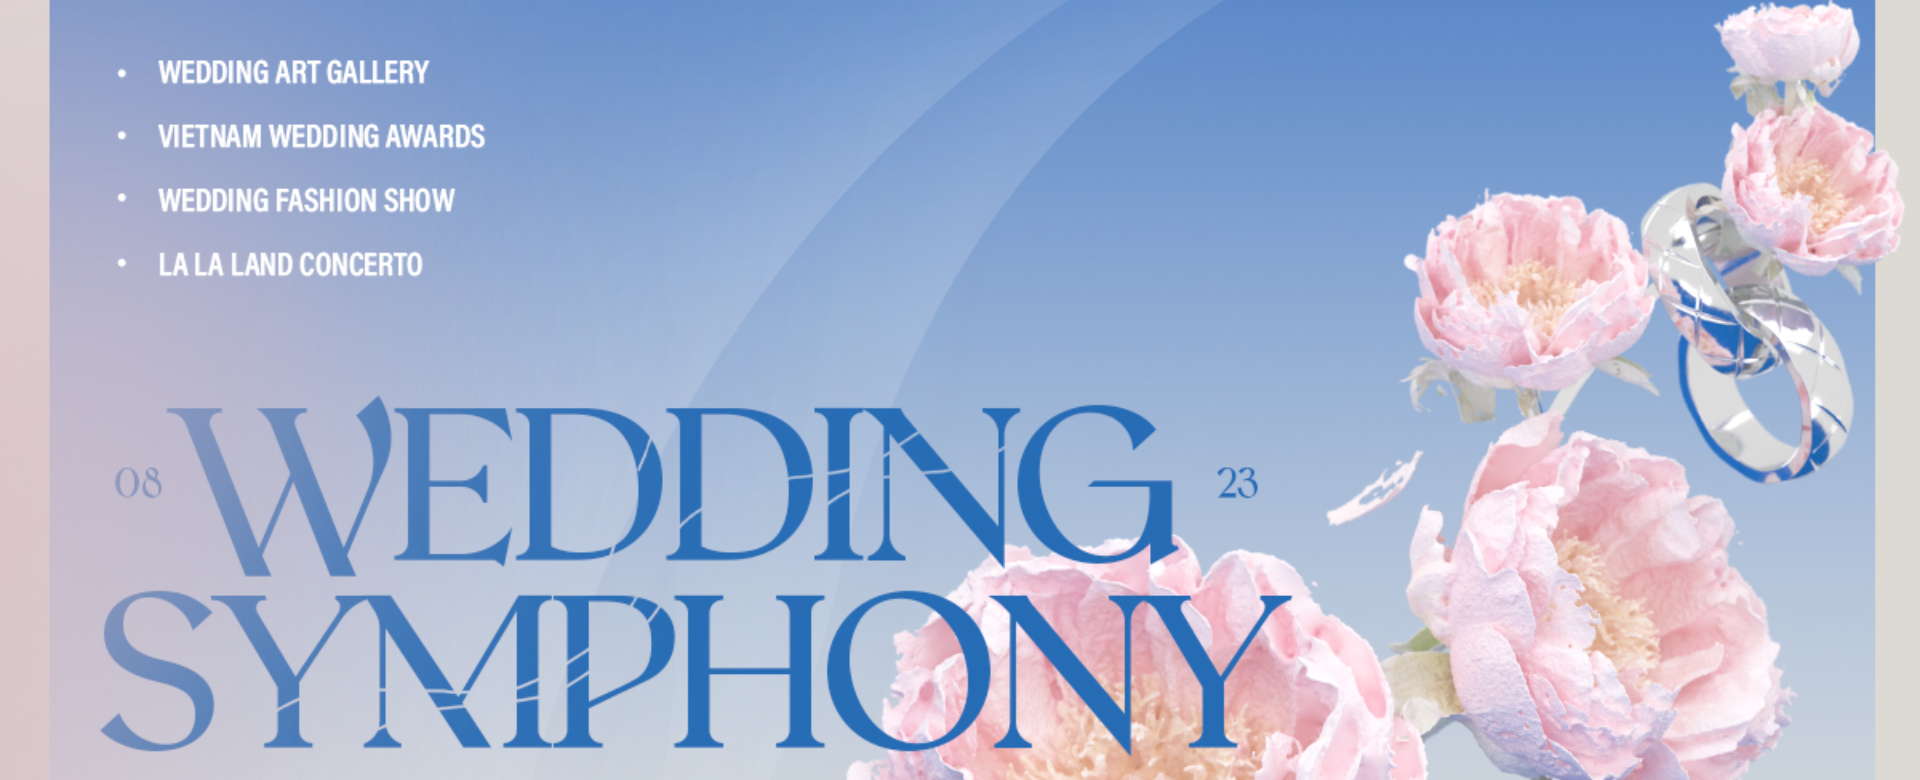 Ra mắt Wedding Symphony – “Platform” nâng tầm nghệ thuật và sáng tạo của ngành cưới cao cấp